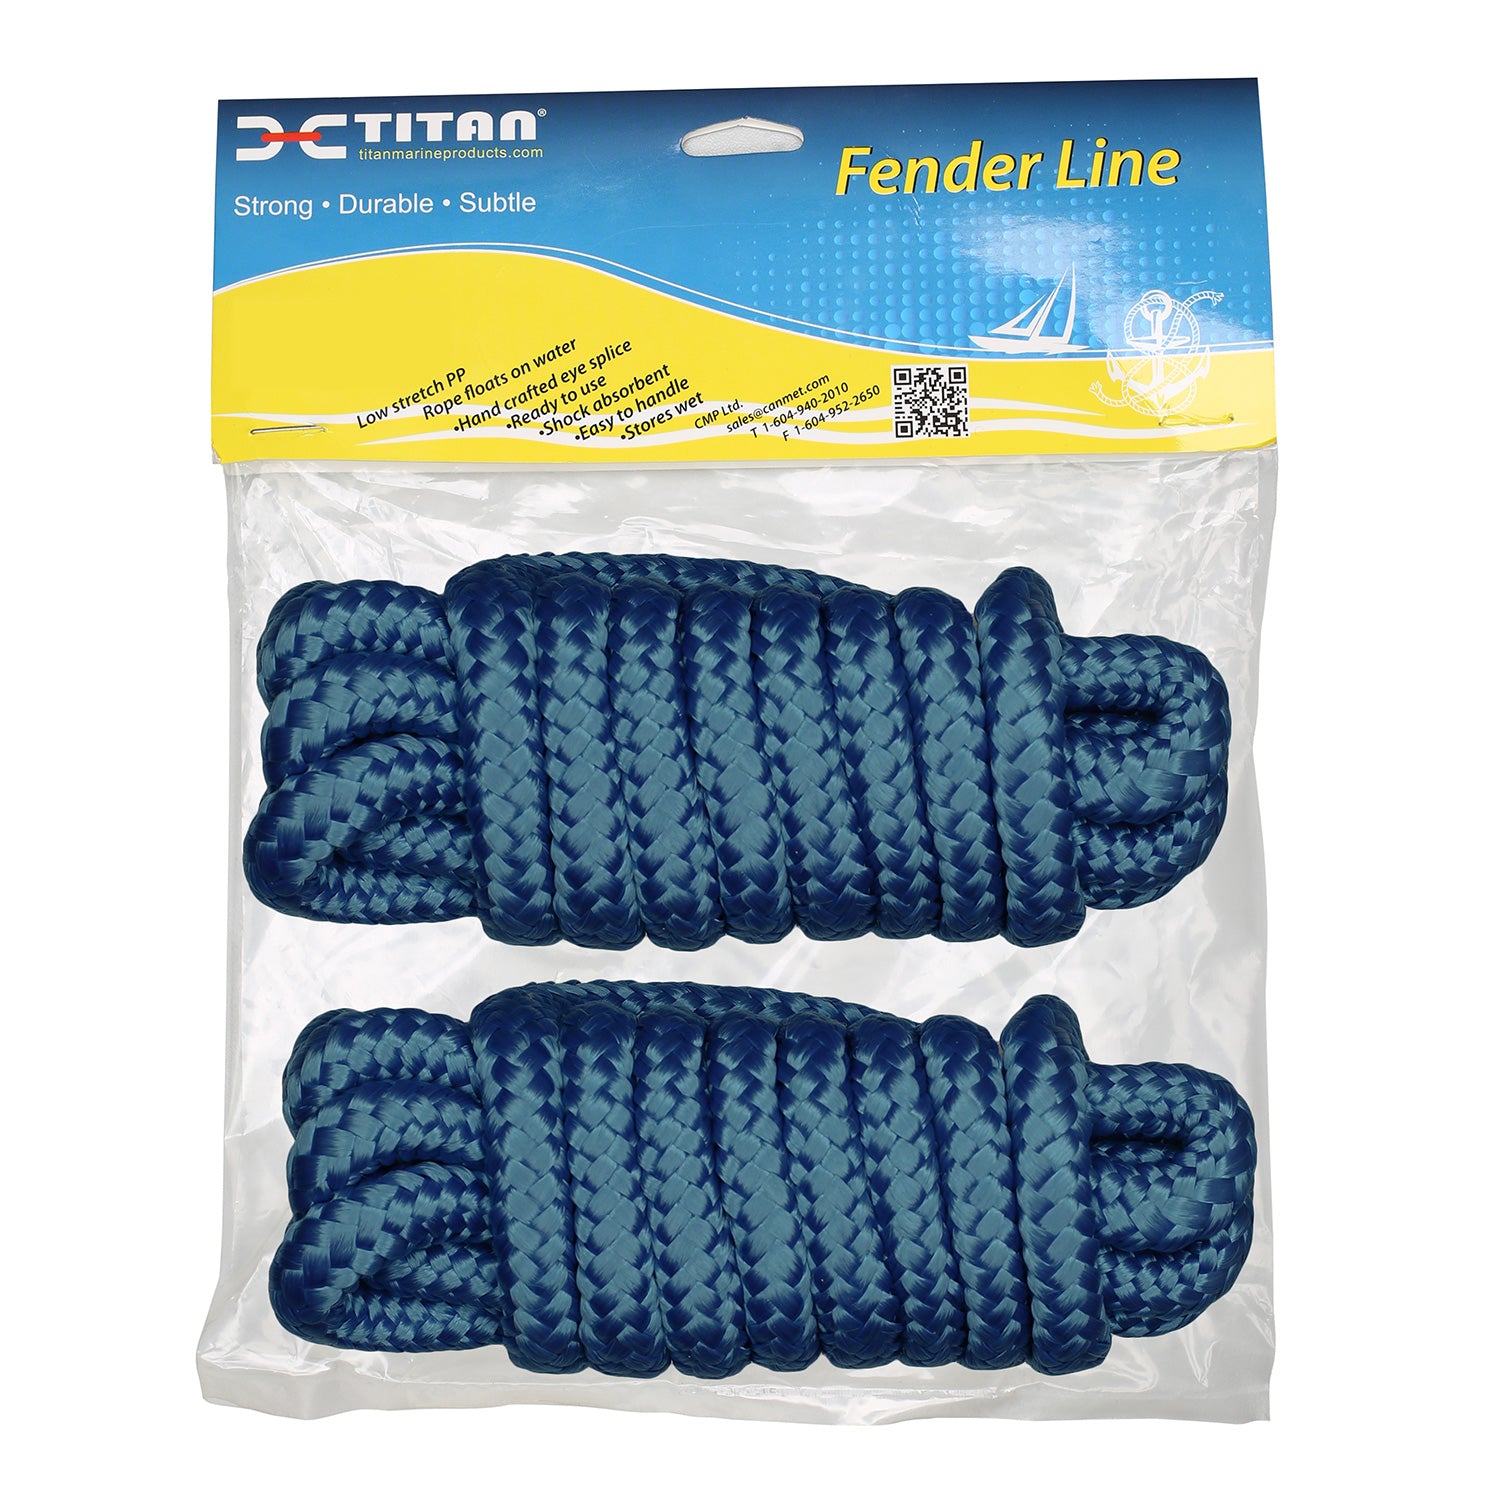 Titan 3/8in-6ft 3-strand Fender Line - Navy, 2pcs